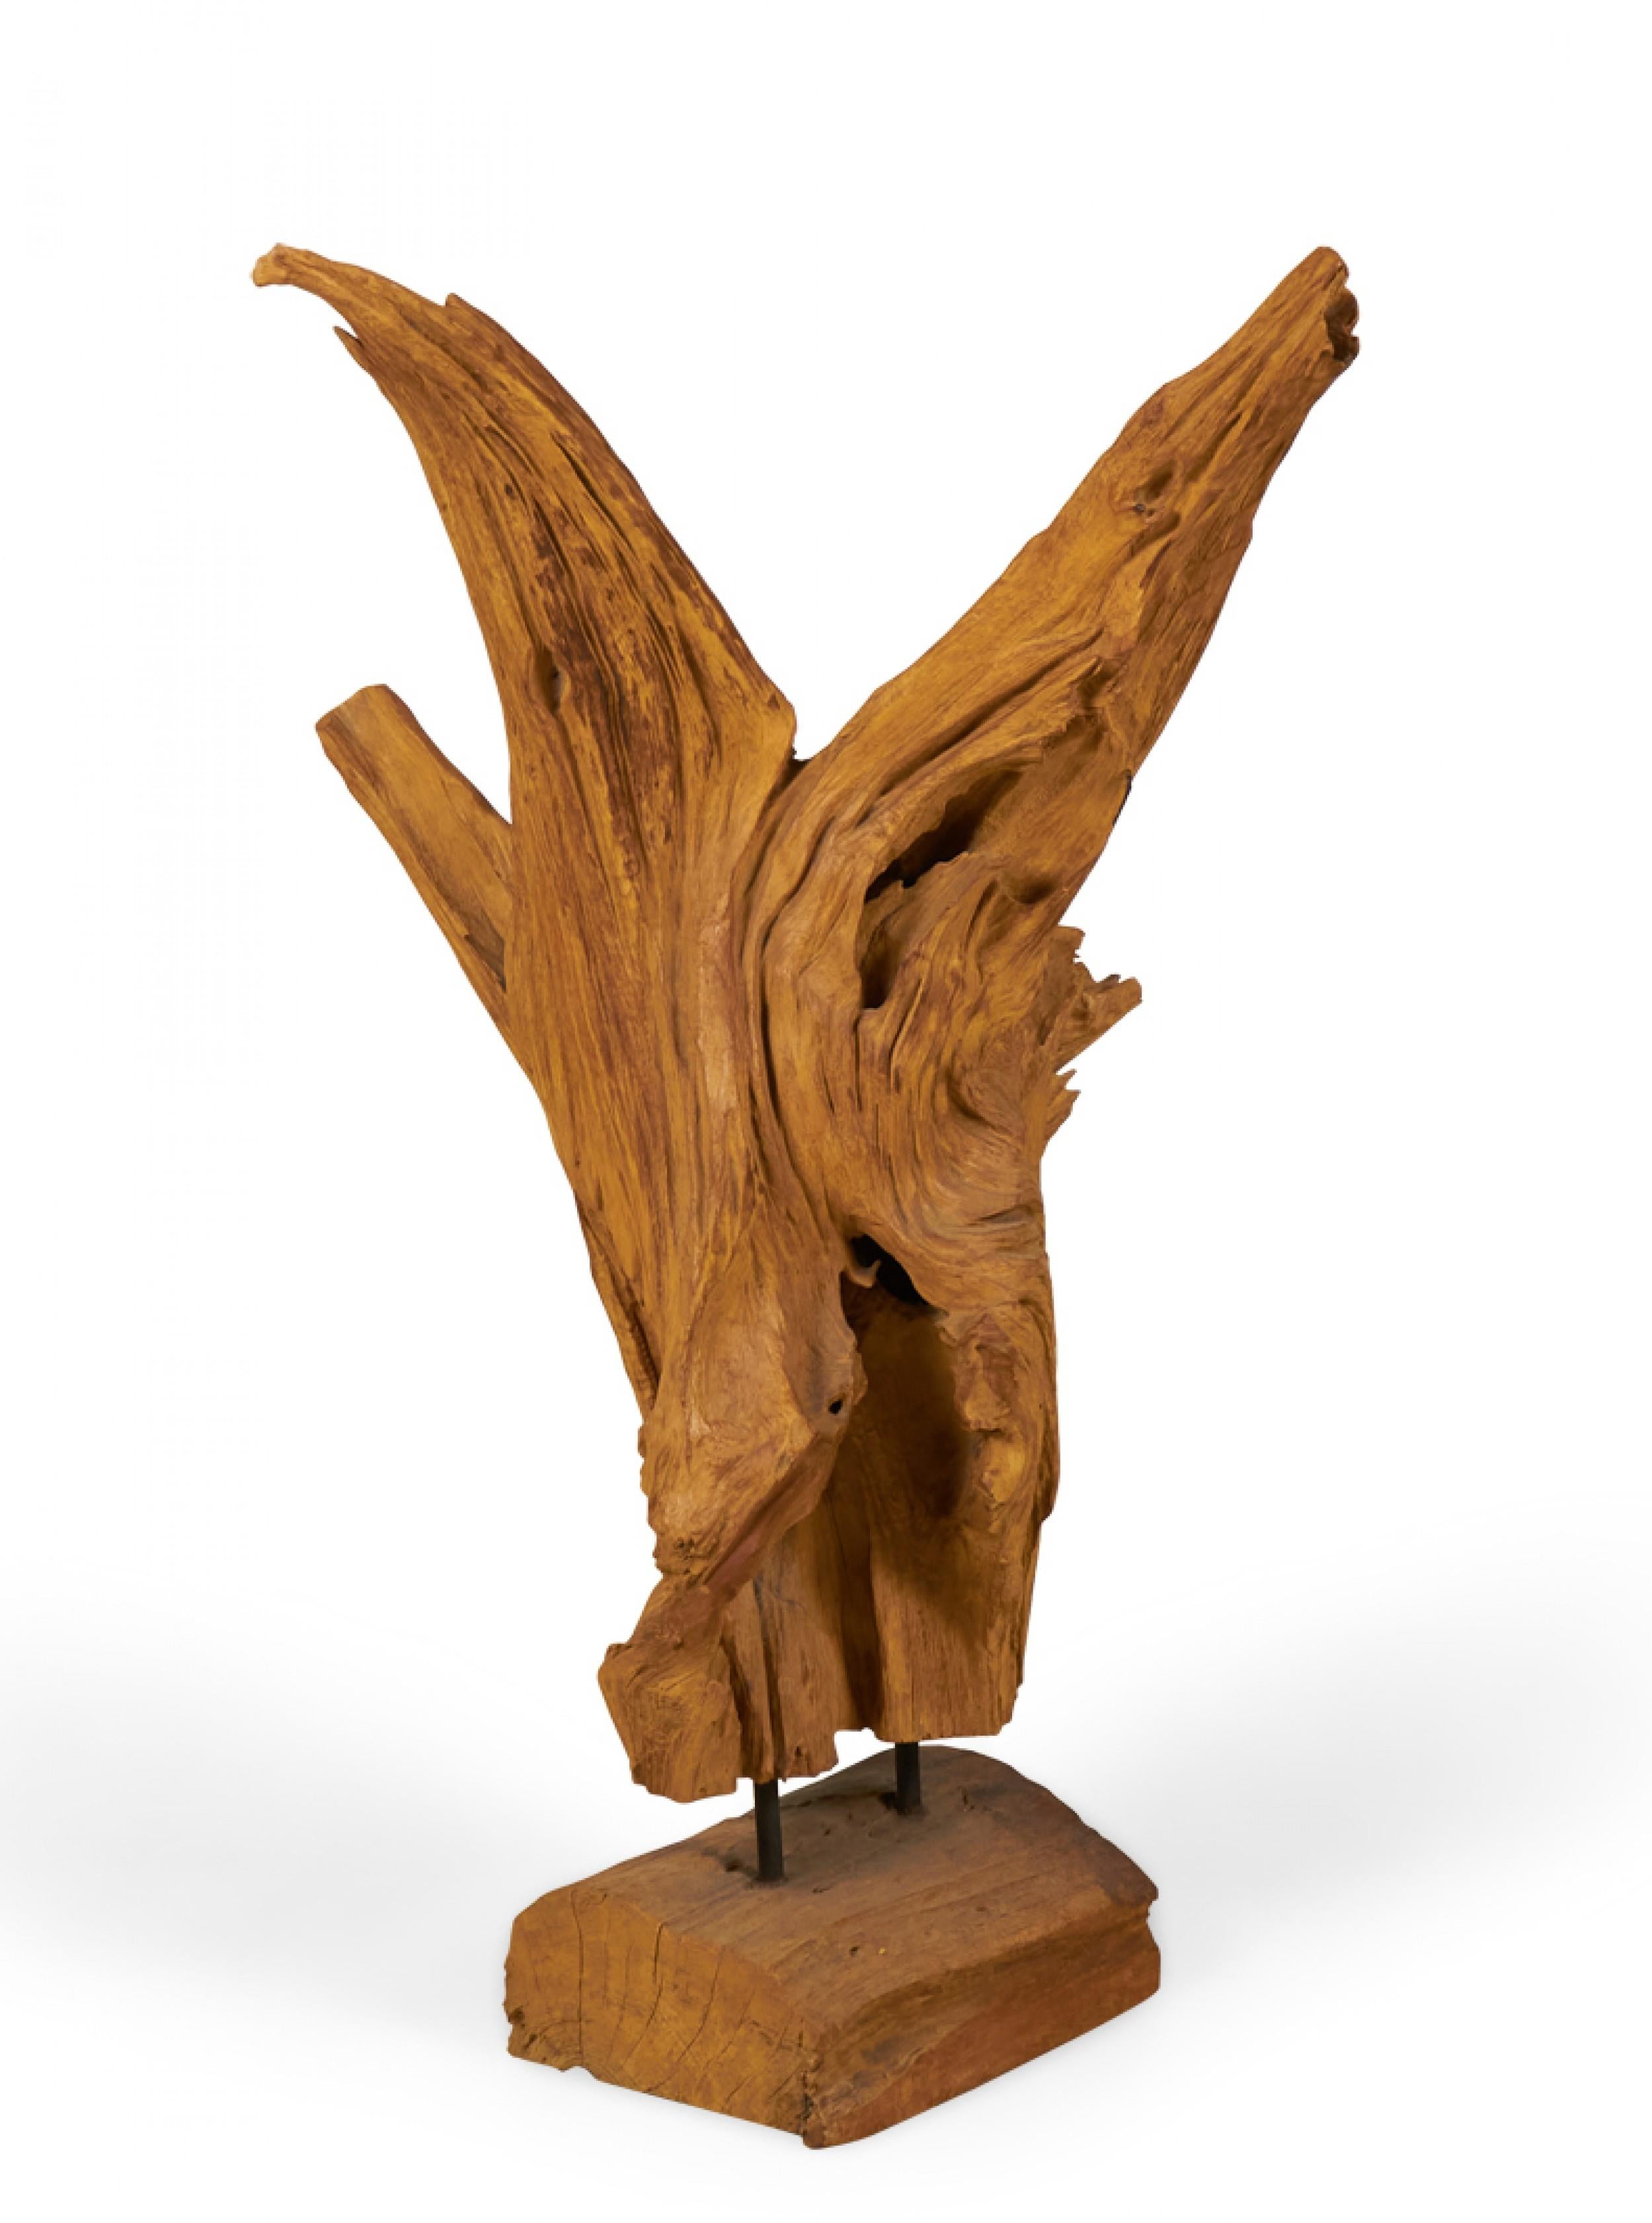 Moderne Skulptur, bestehend aus einer organischen Wurzel eines asiatischen Teakbaums, die mit zwei Metallstäben auf einem rechteckigen Holzsockel montiert ist.
